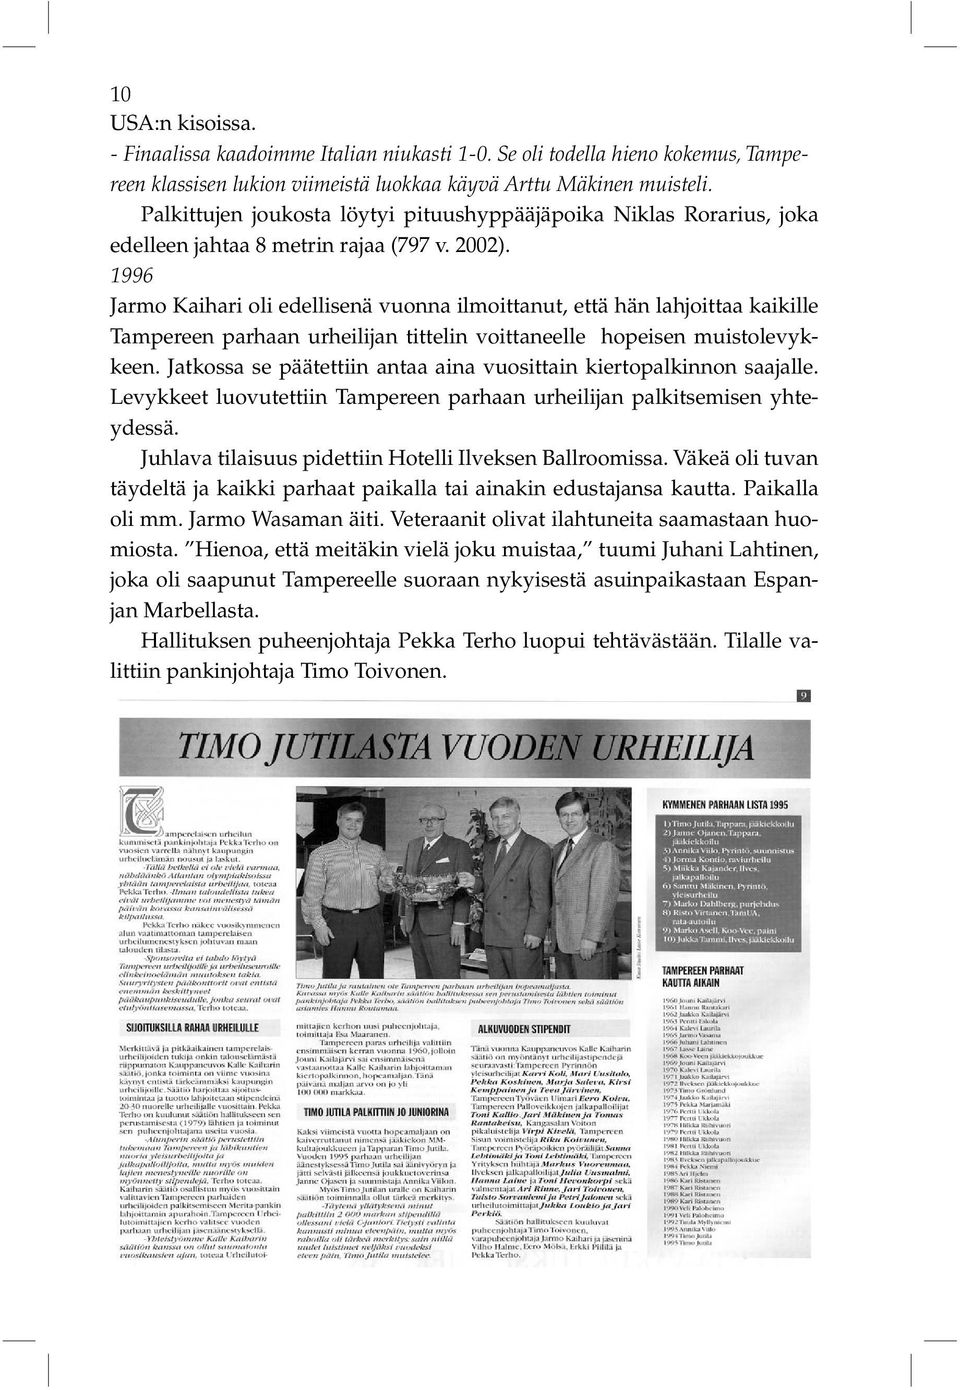 1996 Jarmo Kaihari oli edellisenä vuonna ilmoittanut, että hän lahjoittaa kaikille Tampereen parhaan urheilijan tittelin voittaneelle hopeisen muistolevykkeen.